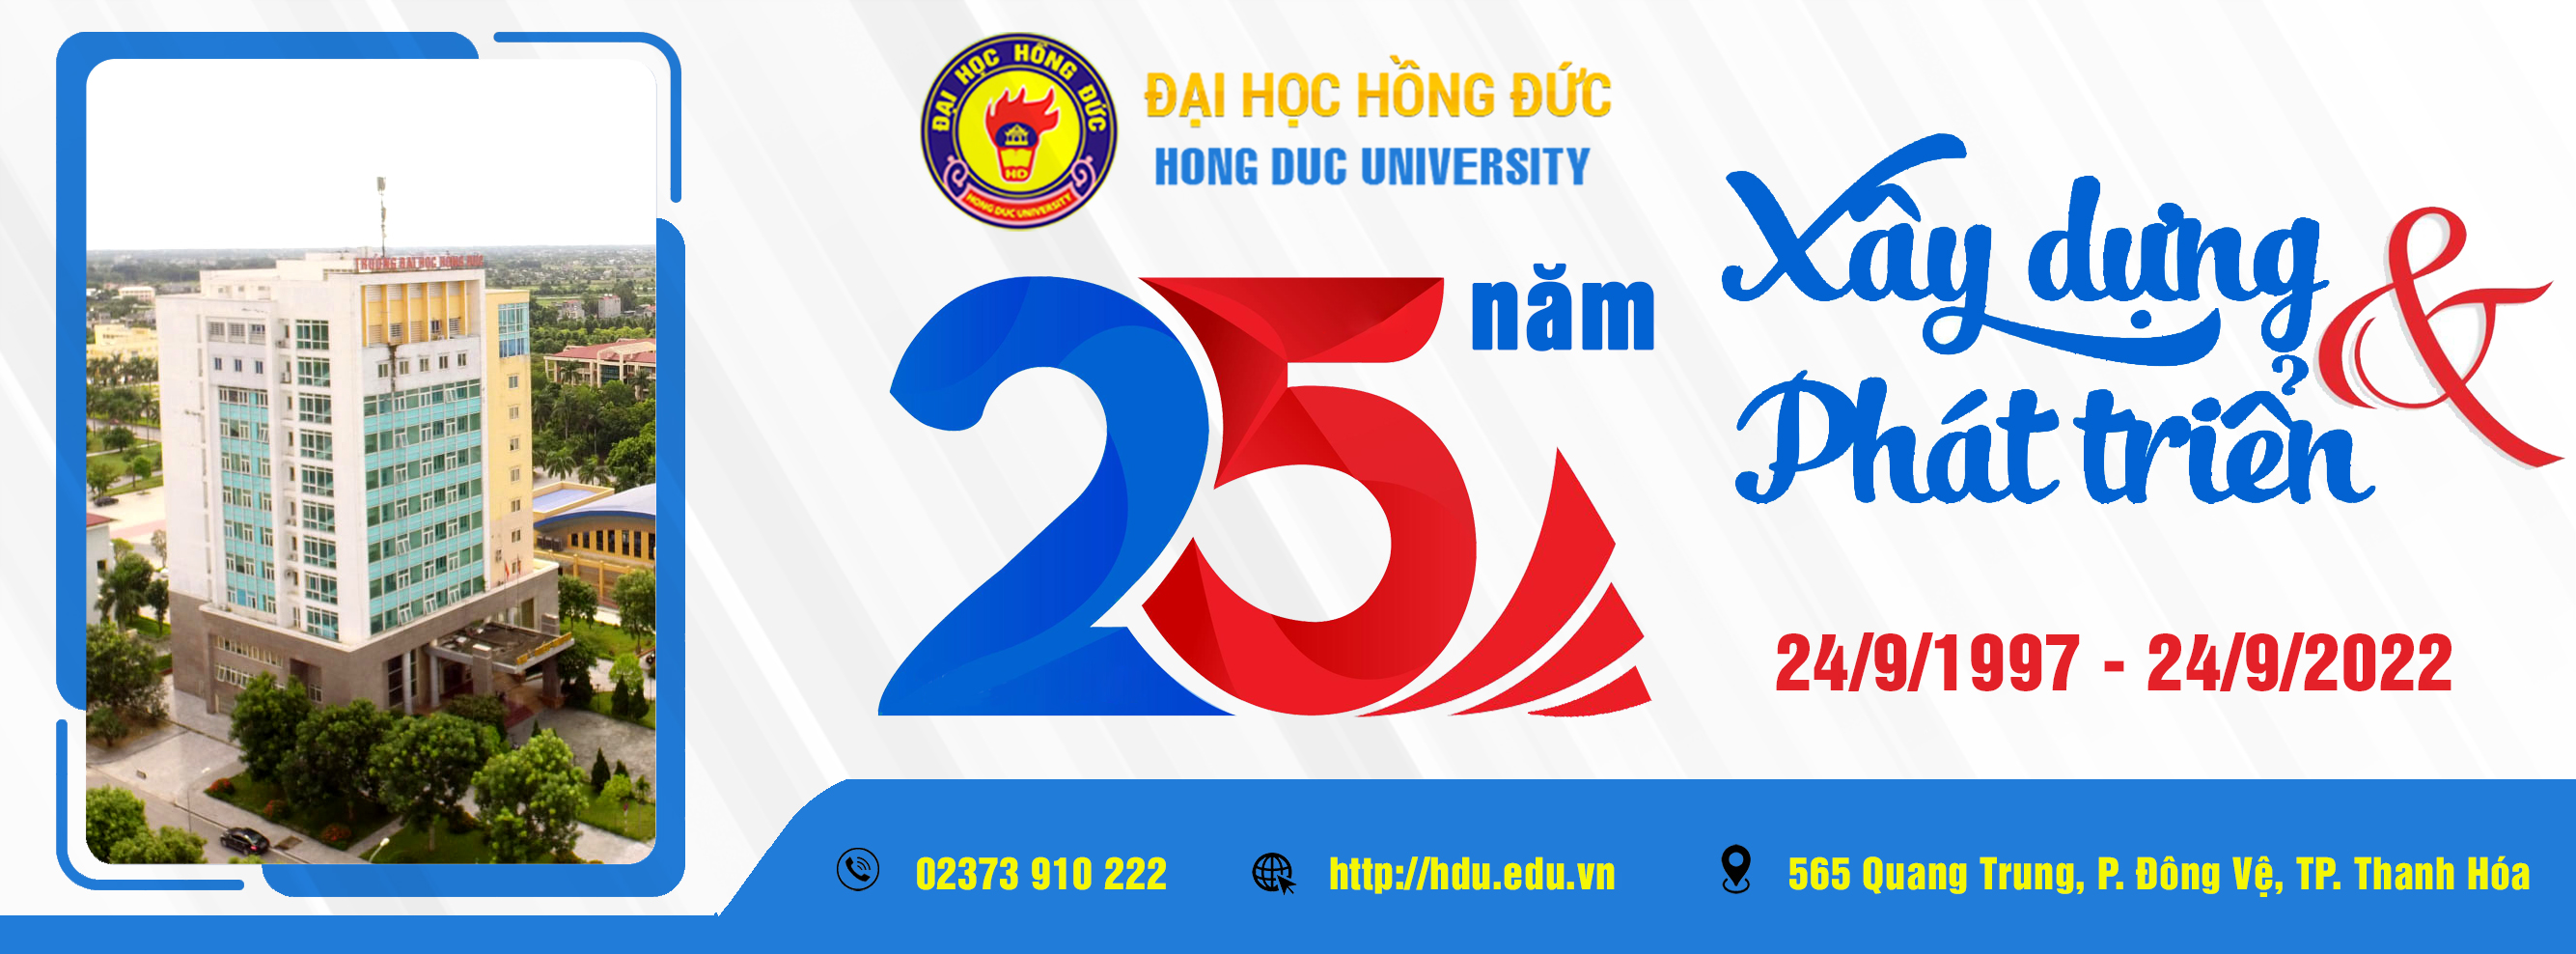 Kế hoạch số 32/KH-CĐ ngày 13/6/2022 của Ban Chấp hành Công đoàn trường về việc Tổ chức các hoạt động chào mừng kỷ niệm 25 năm ngày thành lập trường Đại học Hồng Đức (24/9/1997 - 24/9/2022)